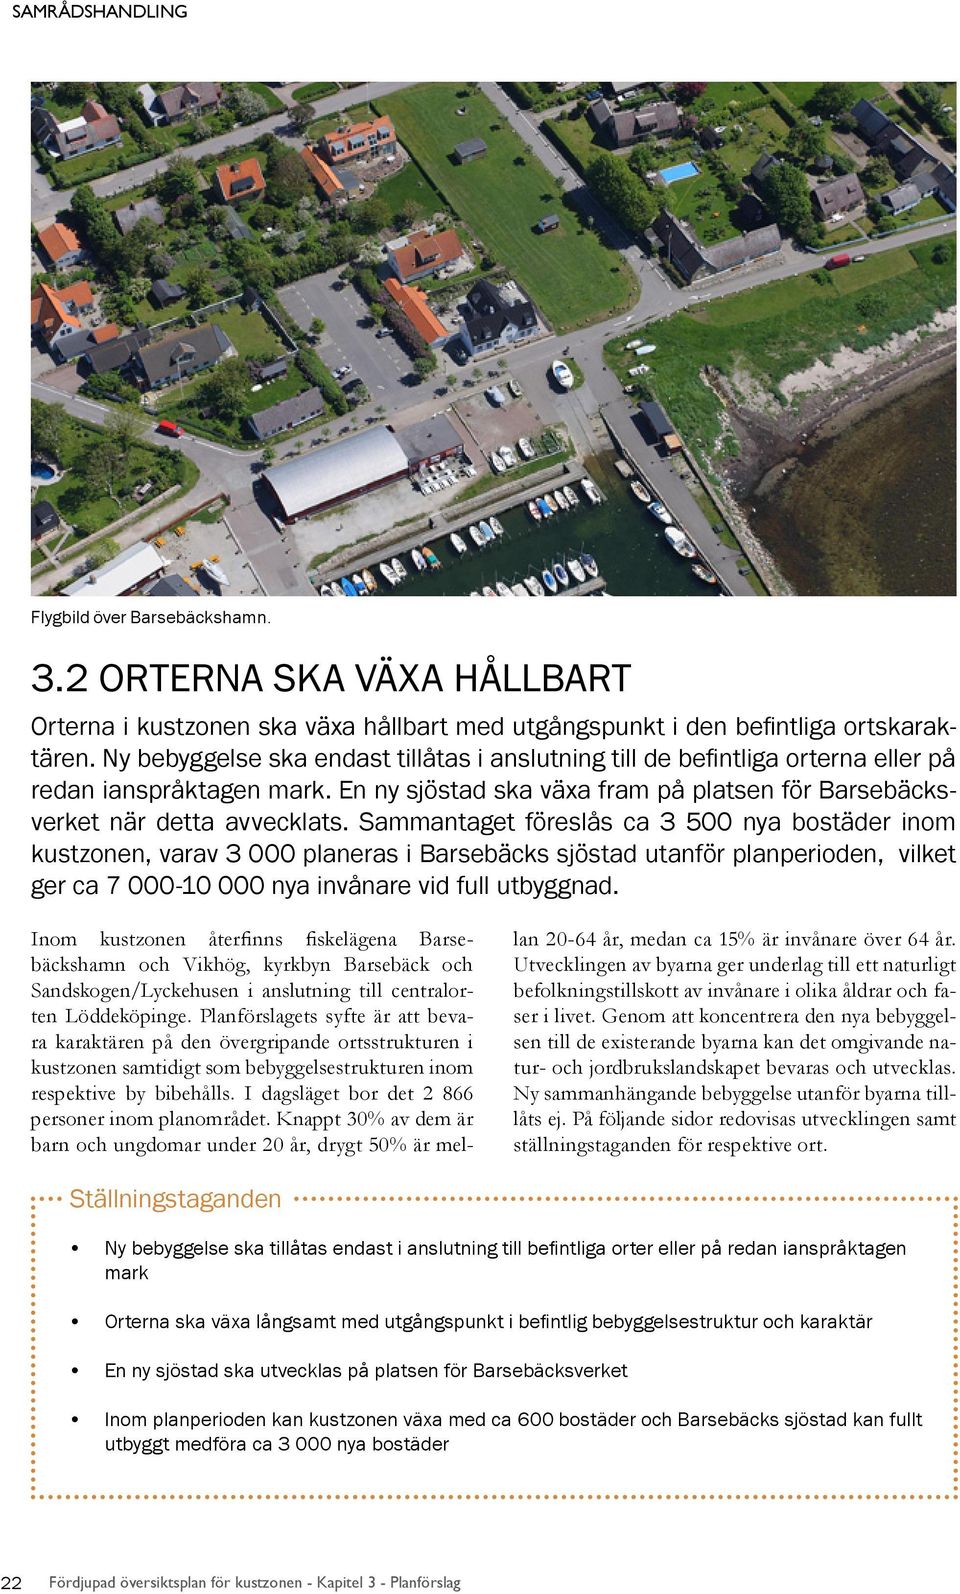 Sammantaget föreslås ca 3 500 nya bostäder inom kustzonen, varav 3 000 planeras i Barsebäcks sjöstad utanför planperioden, vilket ger ca 7 000-10 000 nya invånare vid full utbyggnad.